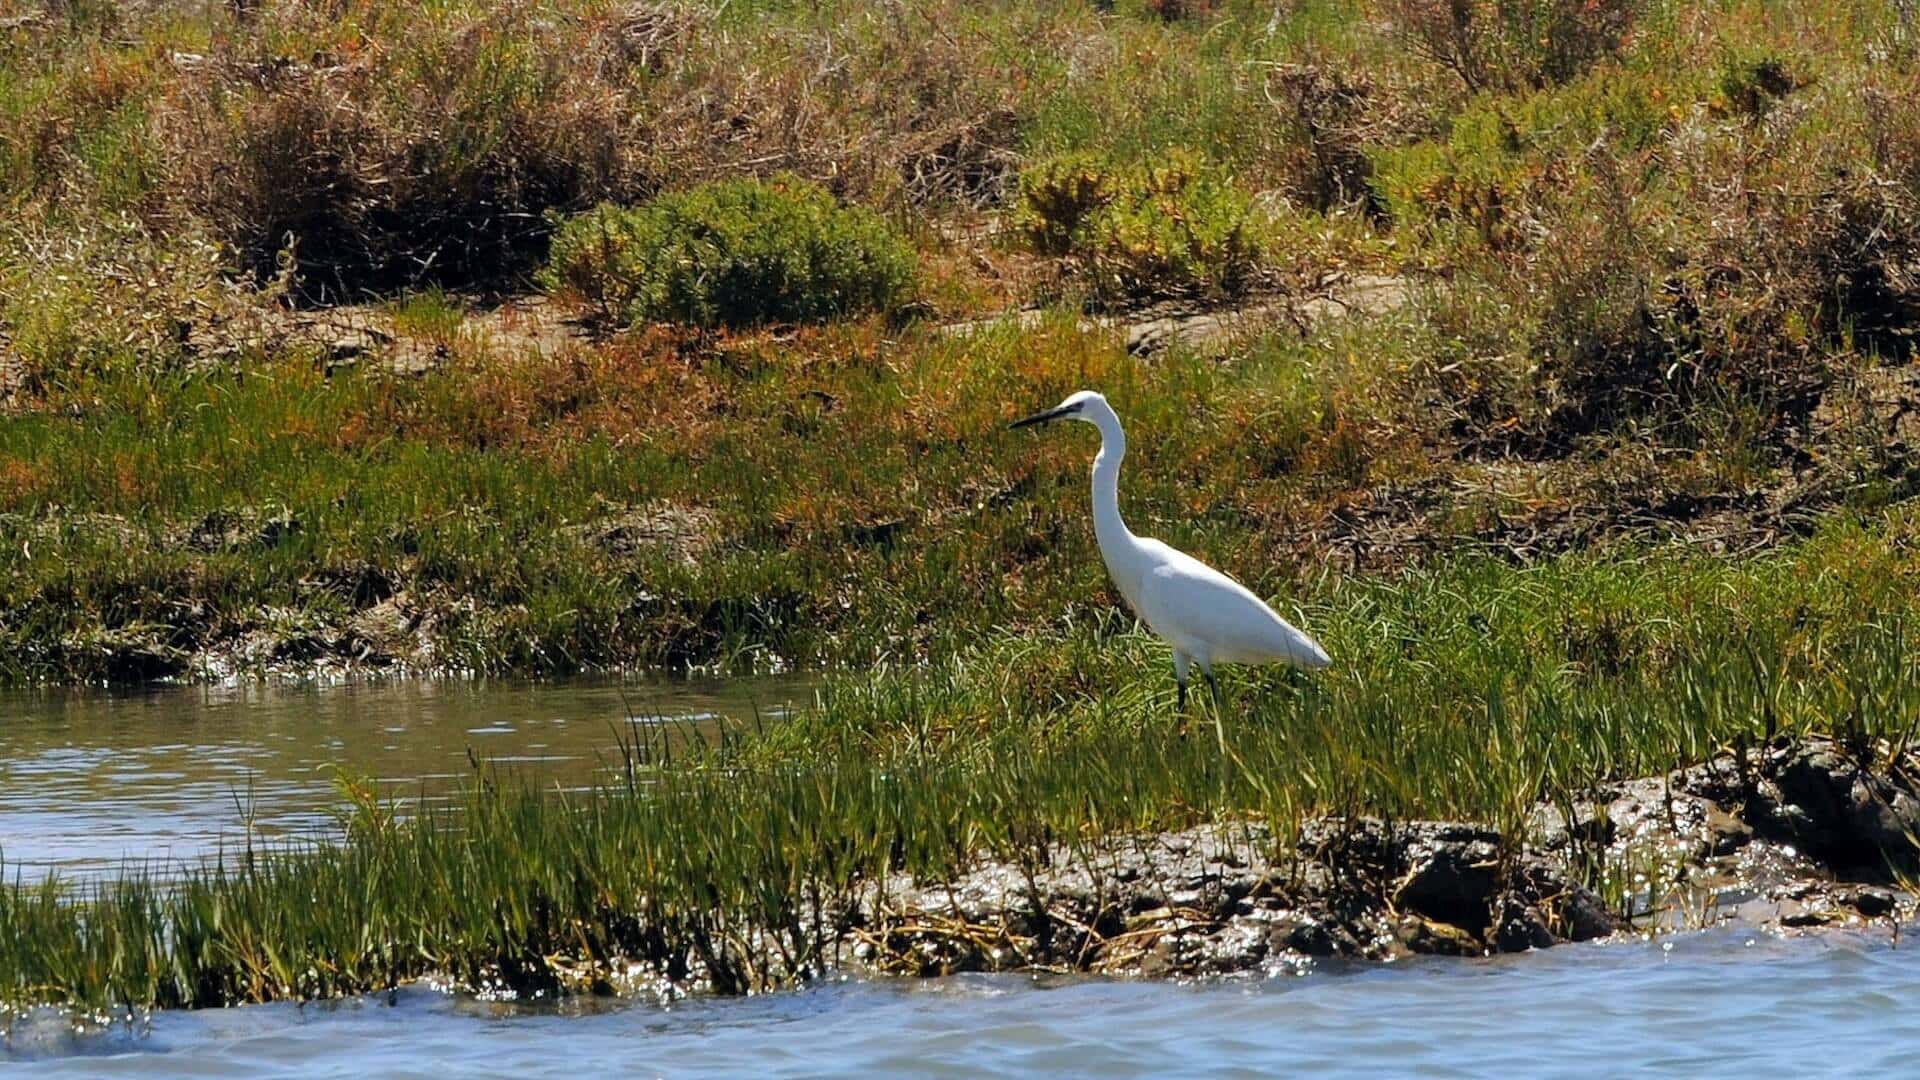 Explore e aprecie a avifauna e a natureza neste passeio ecológico pela Ria Formosa e faça da sua visita a Faro uma opção de turismo sustentável.